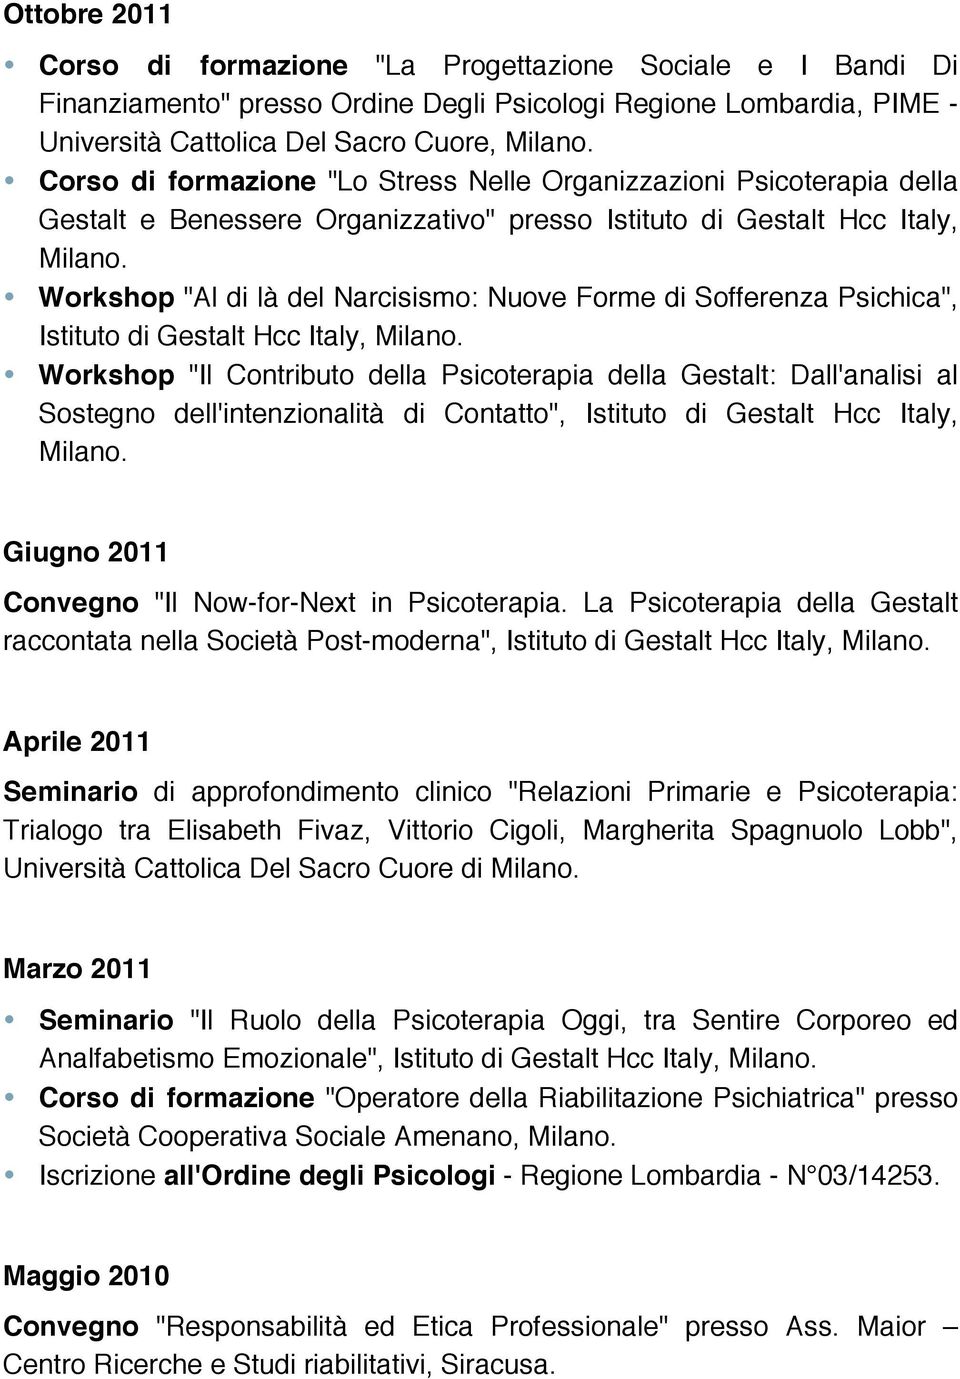 Workshop "Al di là del Narcisismo: Nuove Forme di Sofferenza Psichica", Istituto di Gestalt Hcc Italy, Milano.